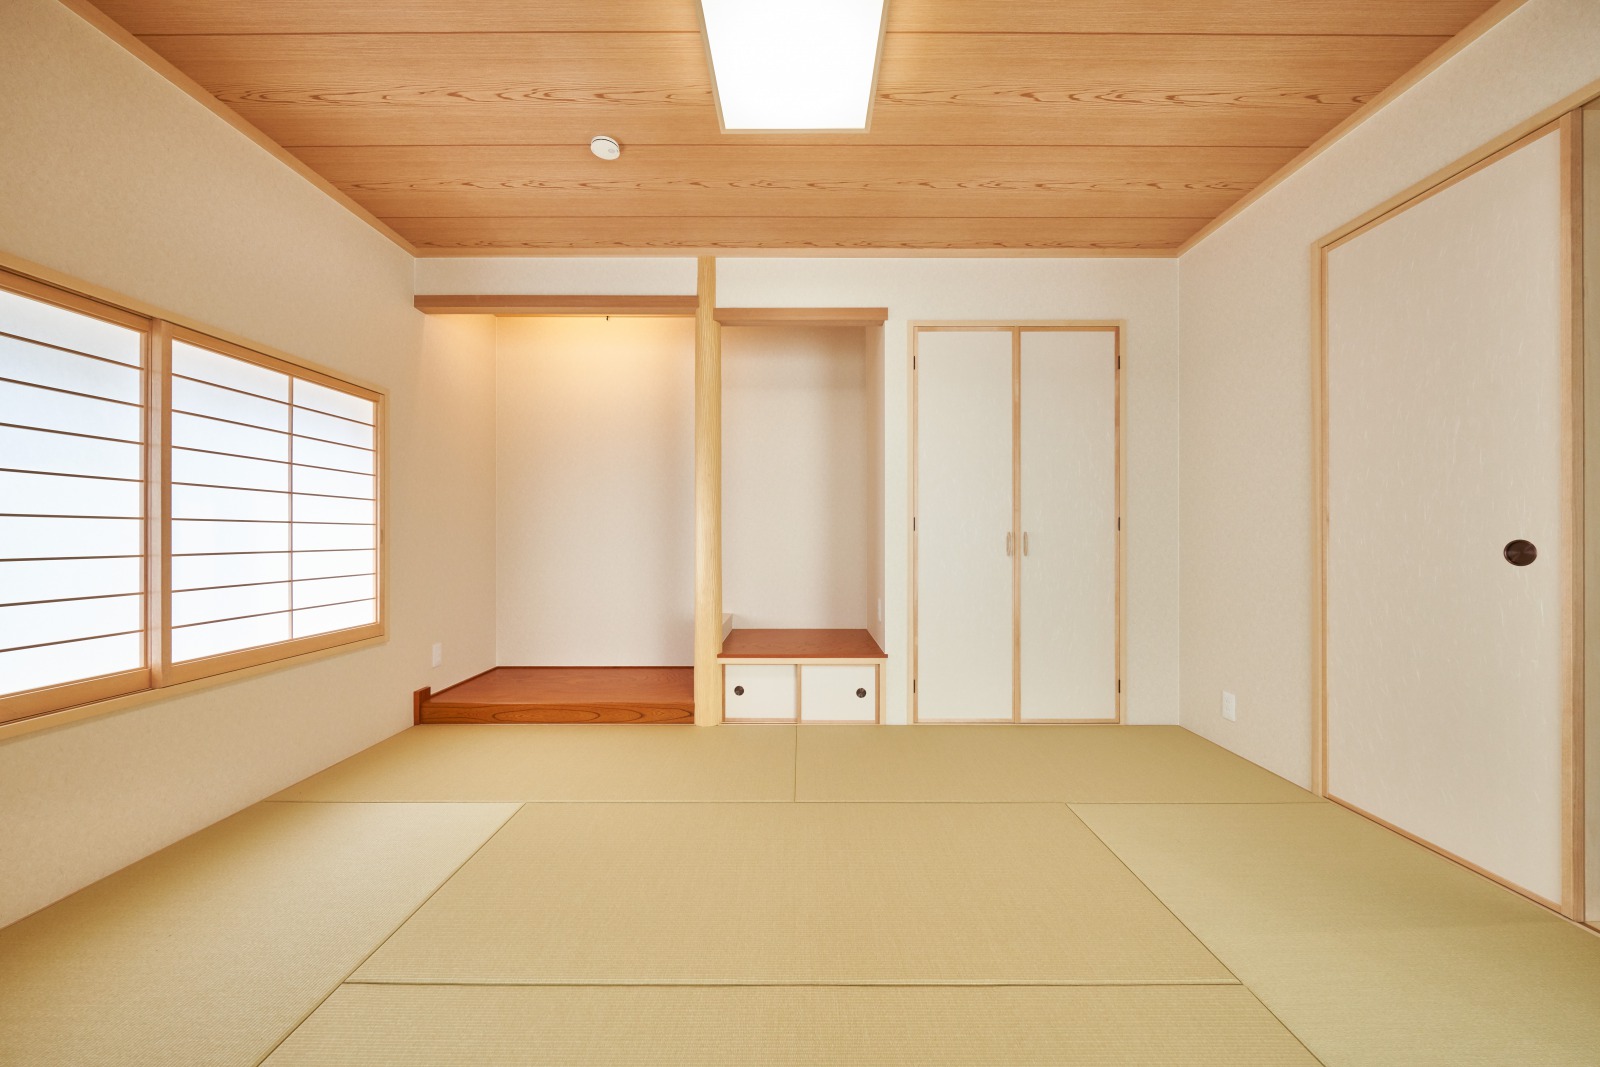 床の間、仏間、収納と、格式のある和室のしつらえ。